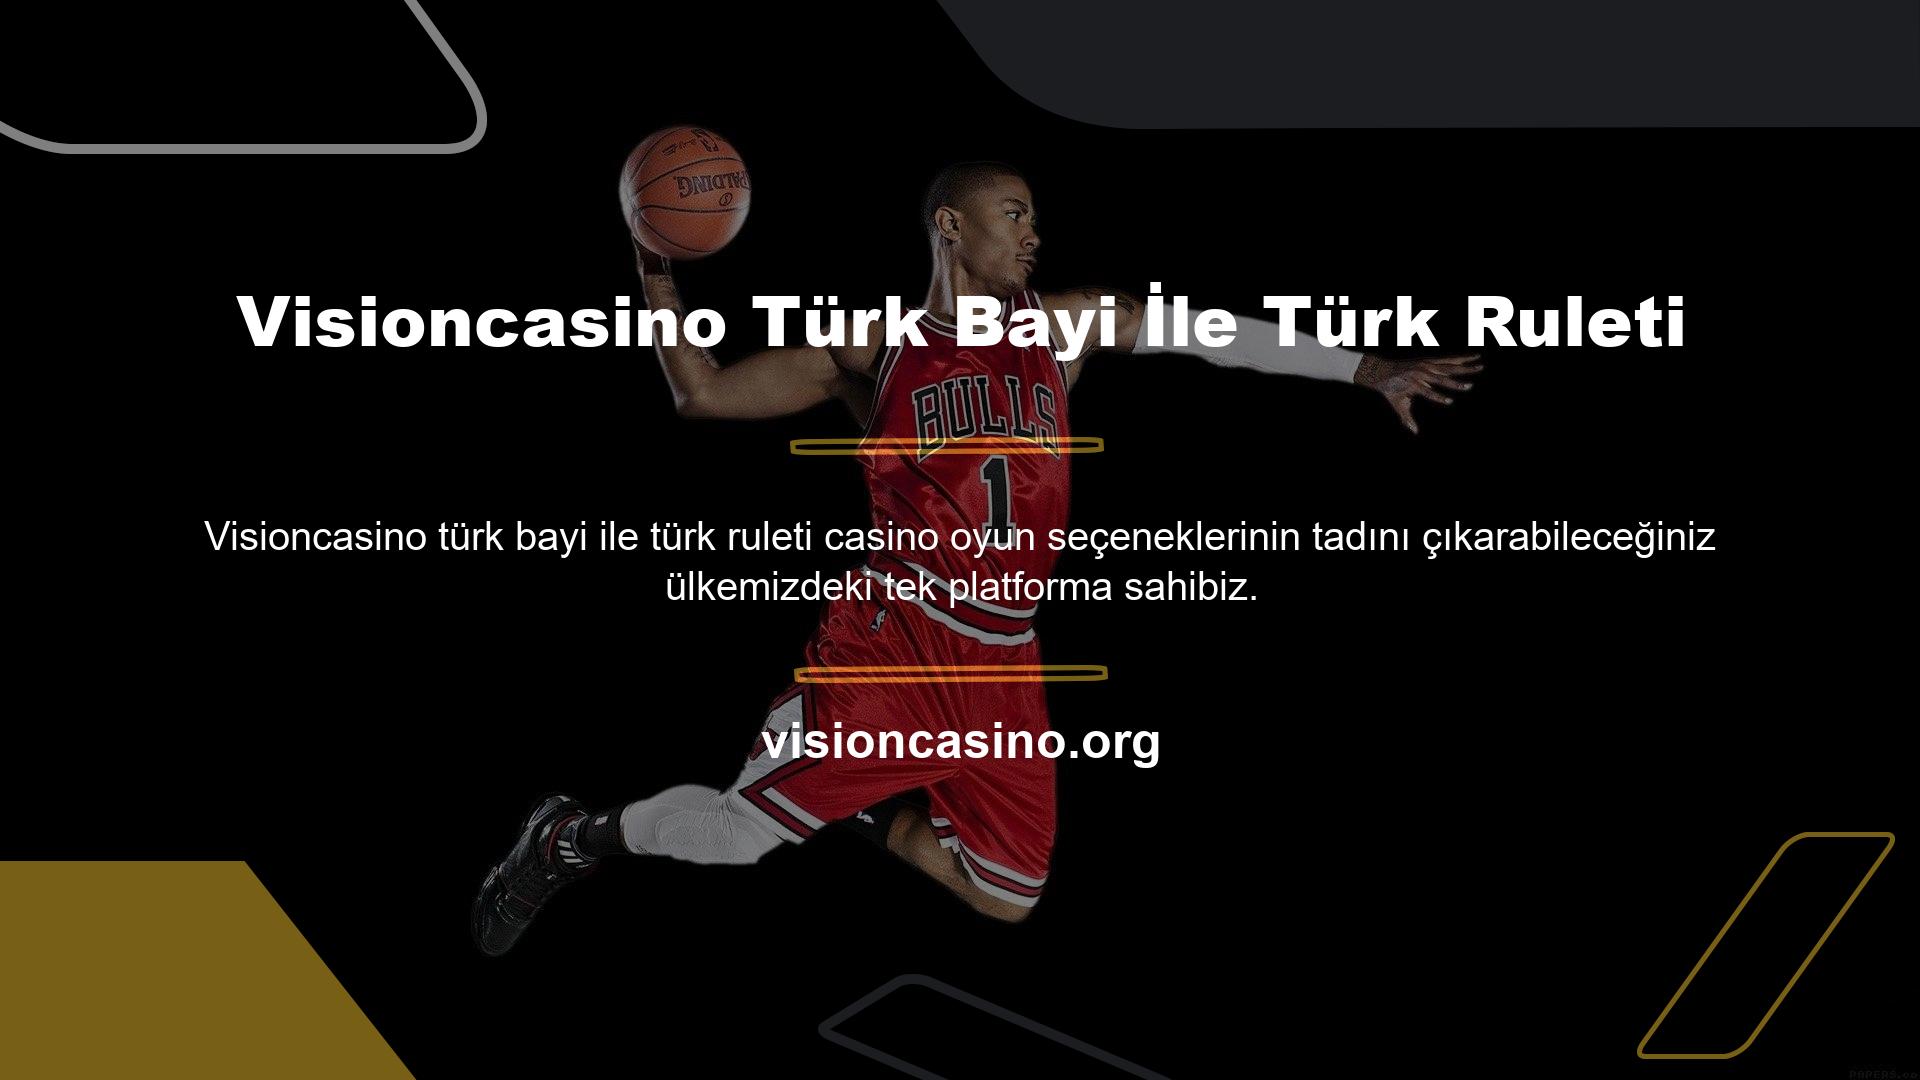 Online casino sitemizi ziyaret ettiğinizde Visioncasino web sitesinde bulunan canlı casino oyun seçeneklerini kullanarak Türk krupiyelerine karşı oynama şansına sahip olacaksınız